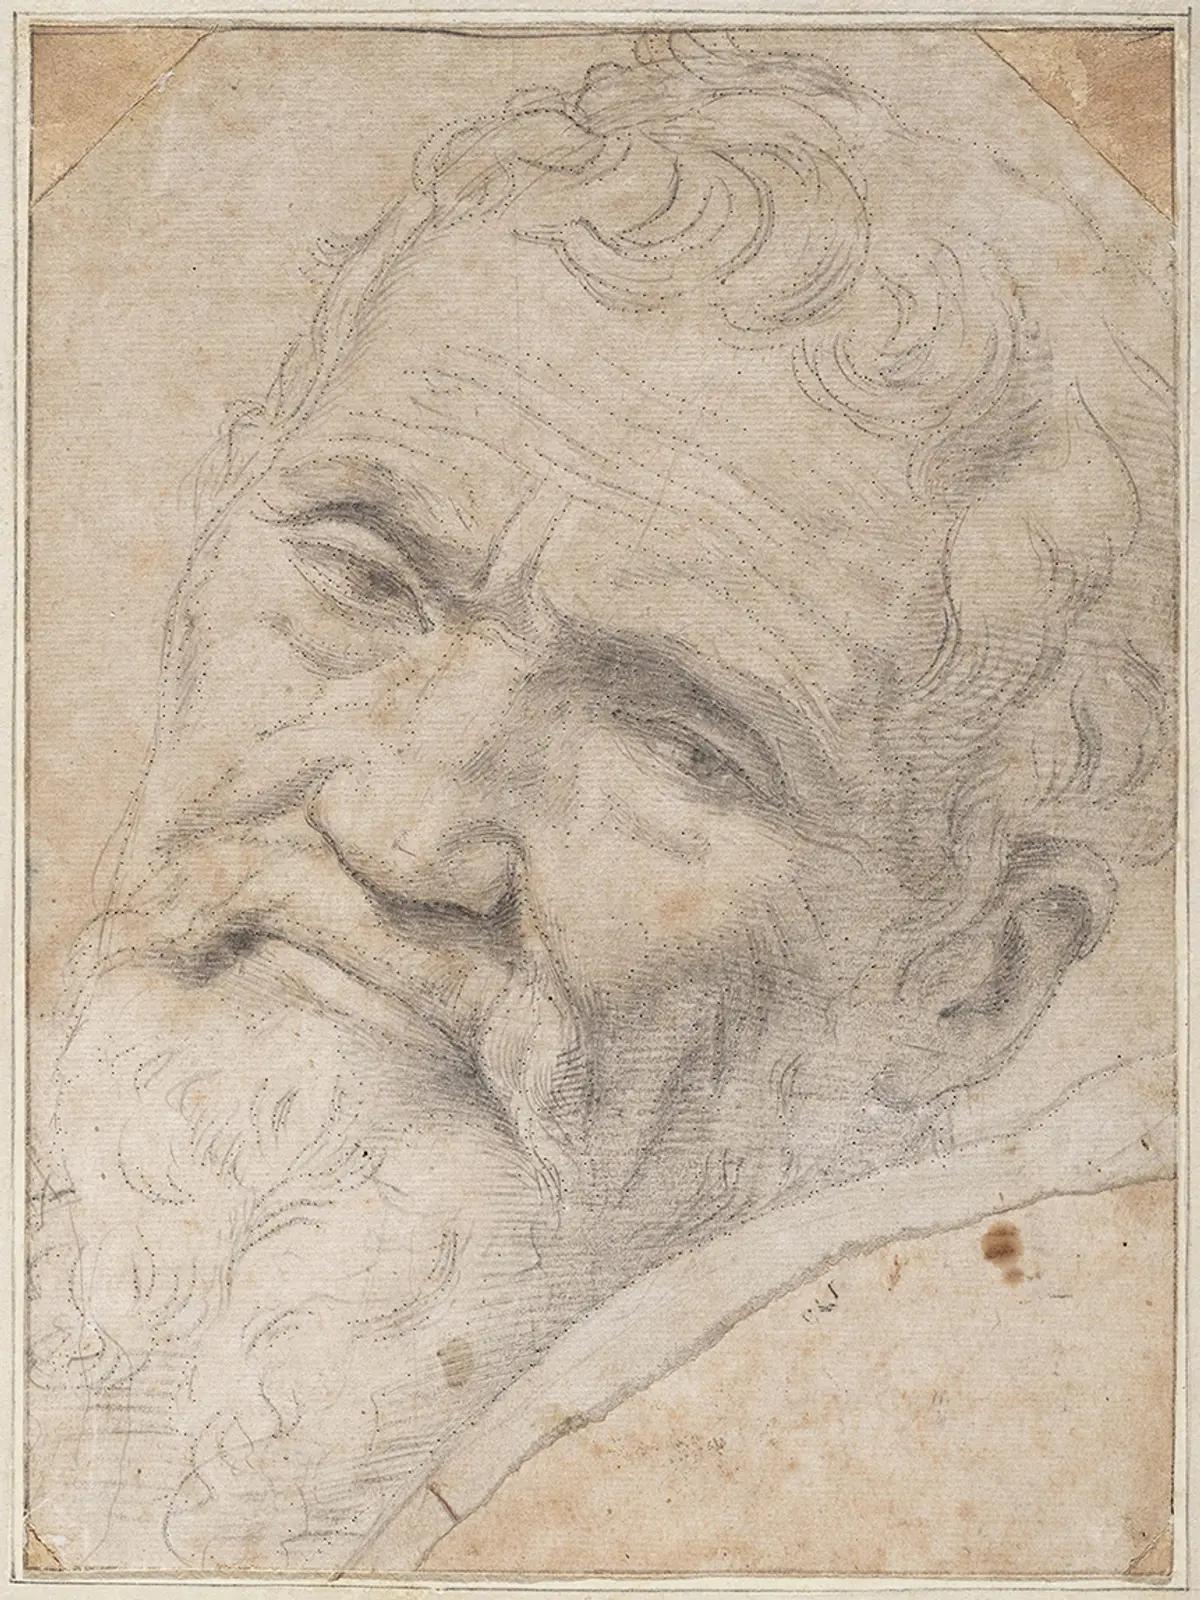 Le portrait de Michel-Ange par Daniele da Volterra. © Teylers Museum de Haarlem